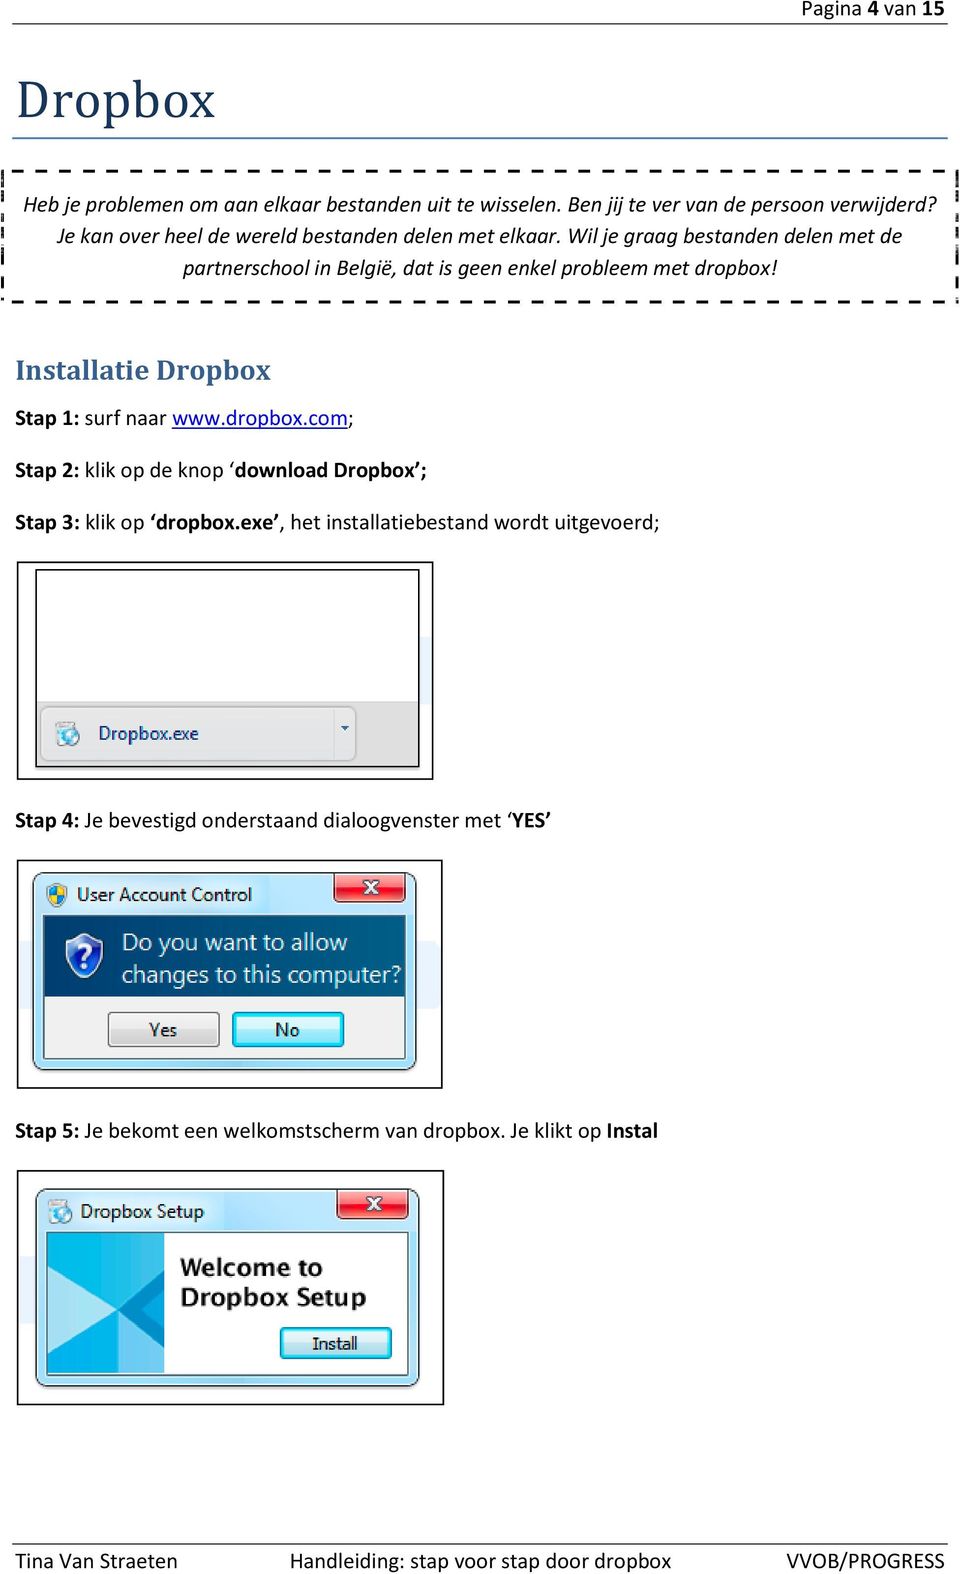 Wil je graag bestanden delen met de partnerschool in België, dat is geen enkel probleem met dropbox! Installatie Dropbox Stap 1: surf naar www.